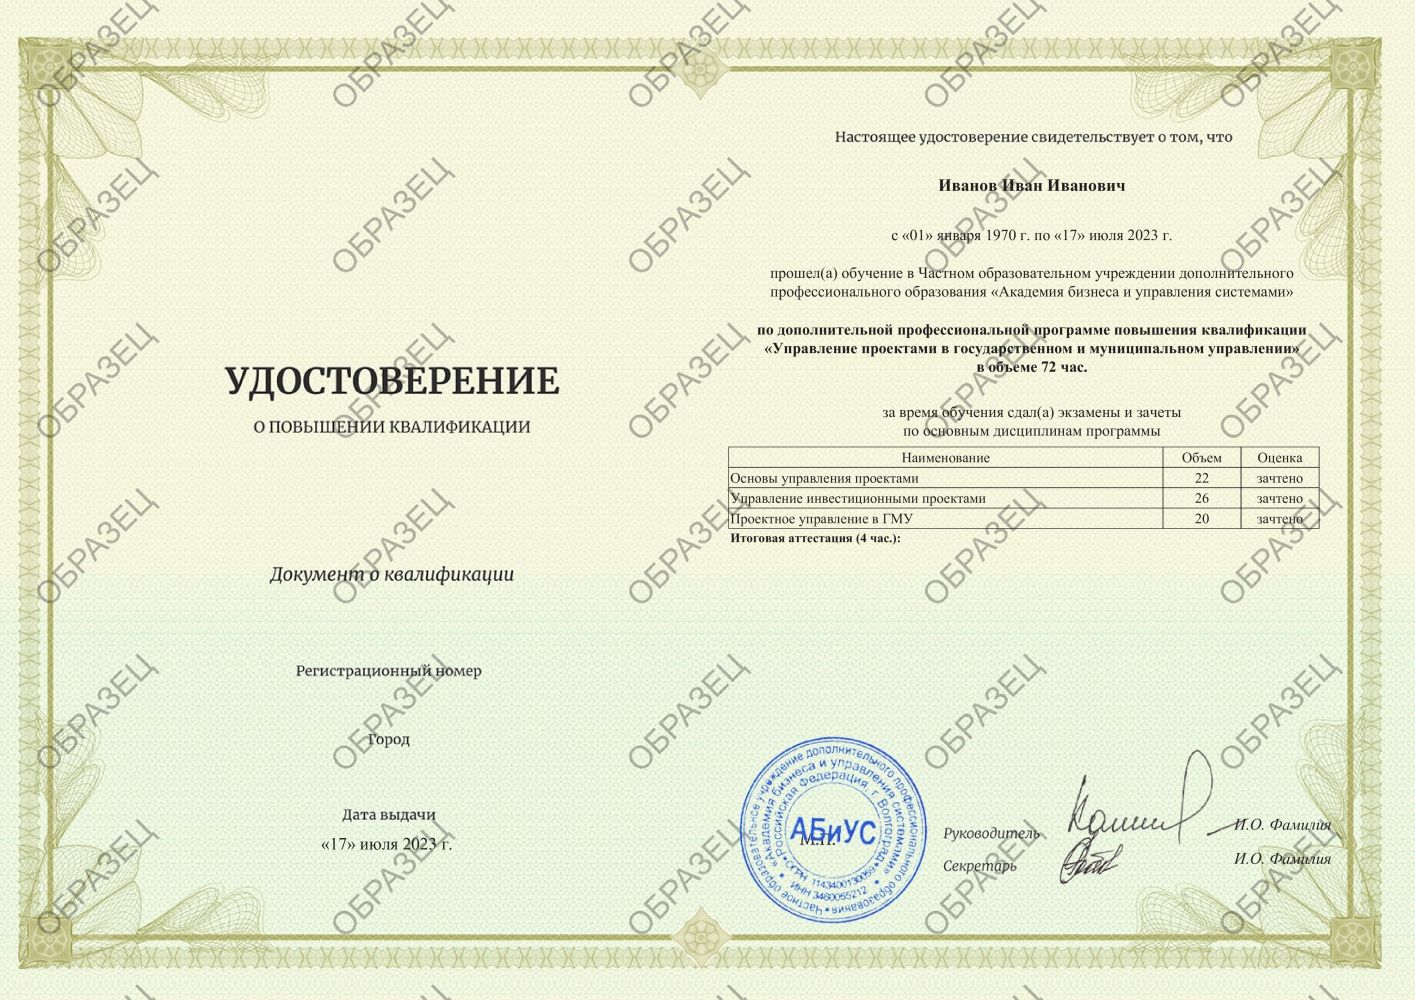 Удостоверение Управление проектами в  государственном и муниципальном управлении 72 часа 4563 руб.